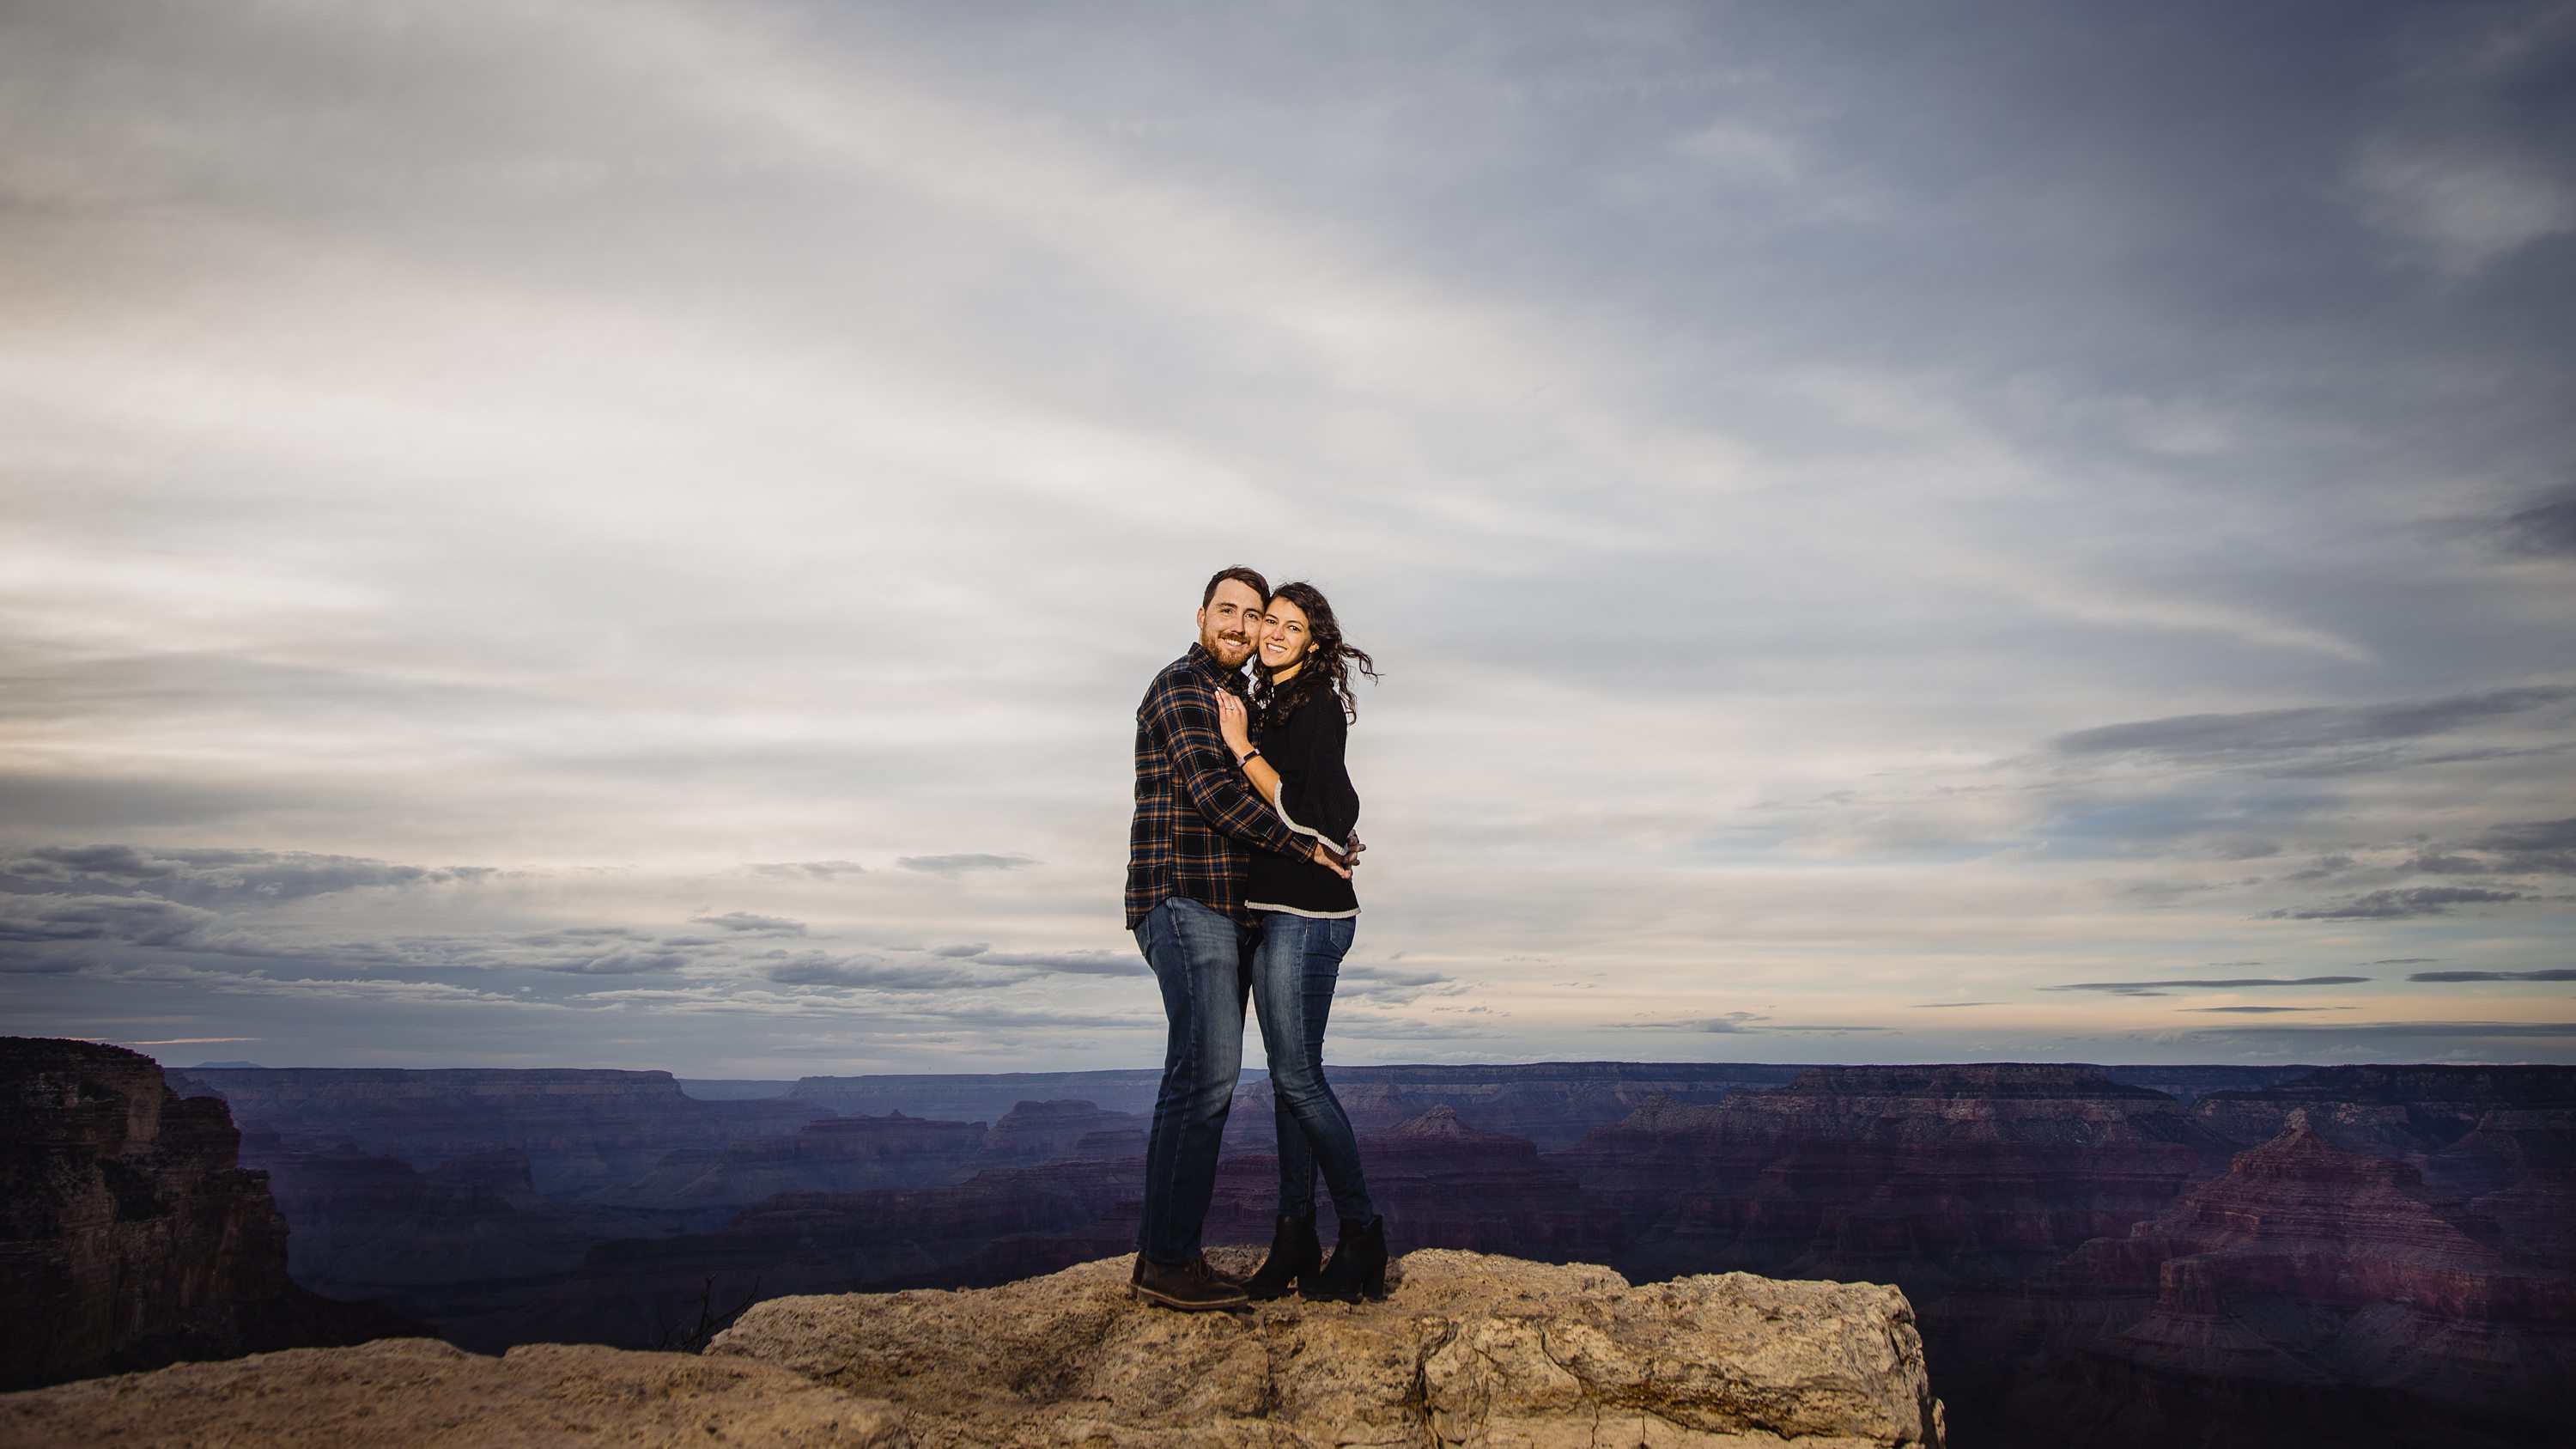 She Said Yes At The Grand Canyon,Engaged at the Grand Canyon